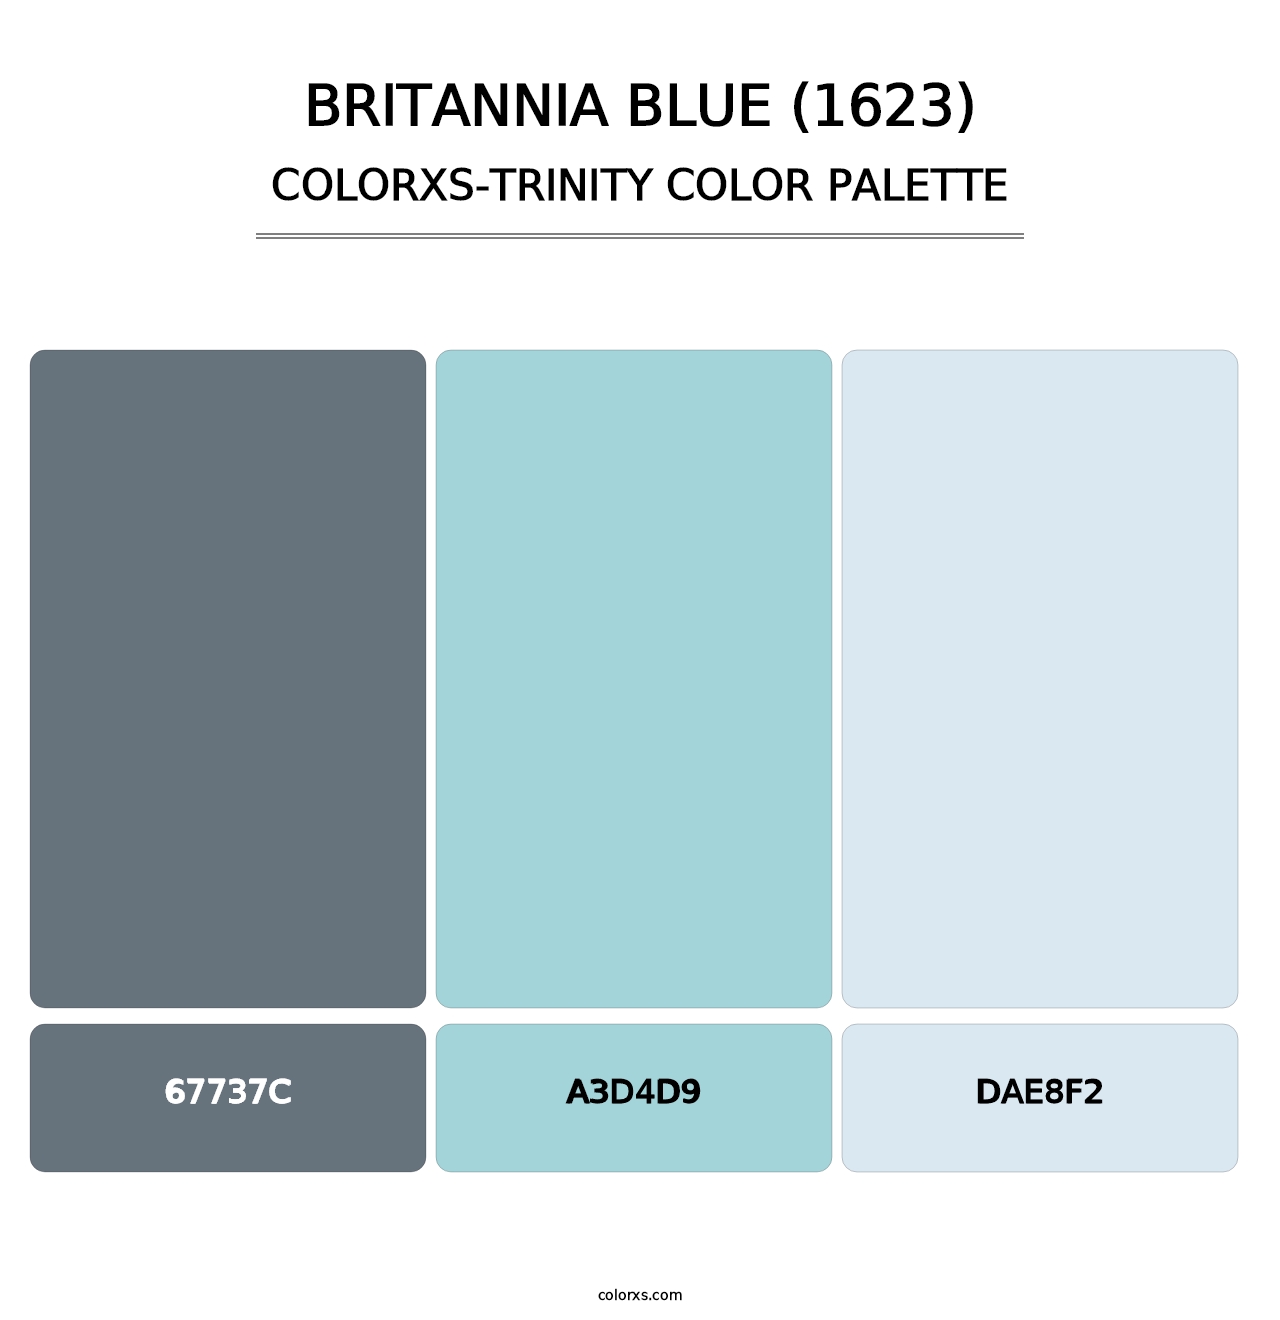 Britannia Blue (1623) - Colorxs Trinity Palette